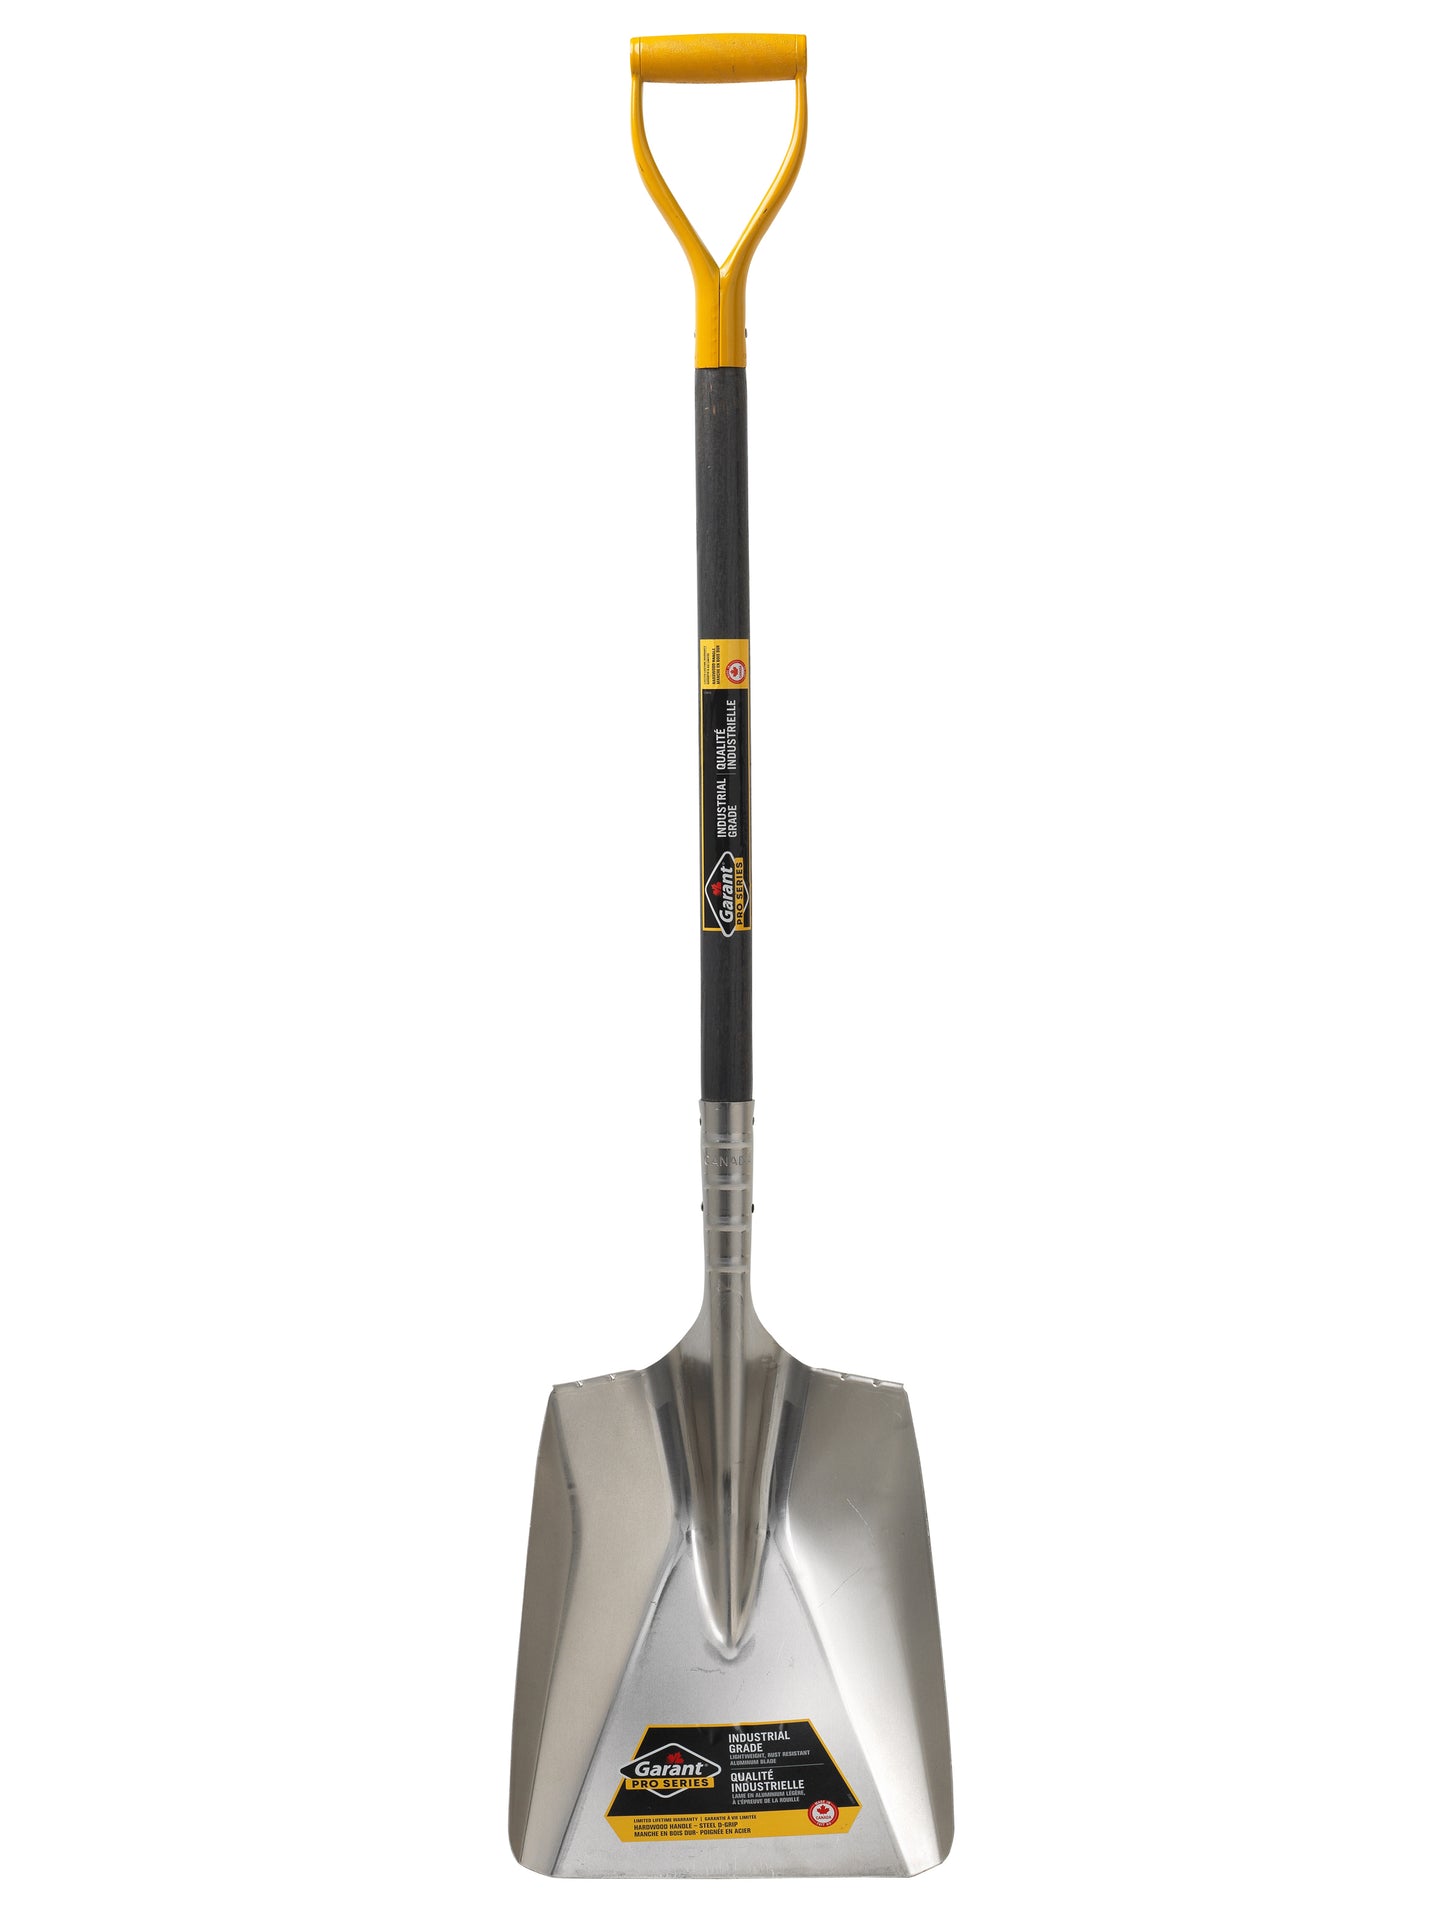 11.7-inch Industrial Grade Snow Shovel